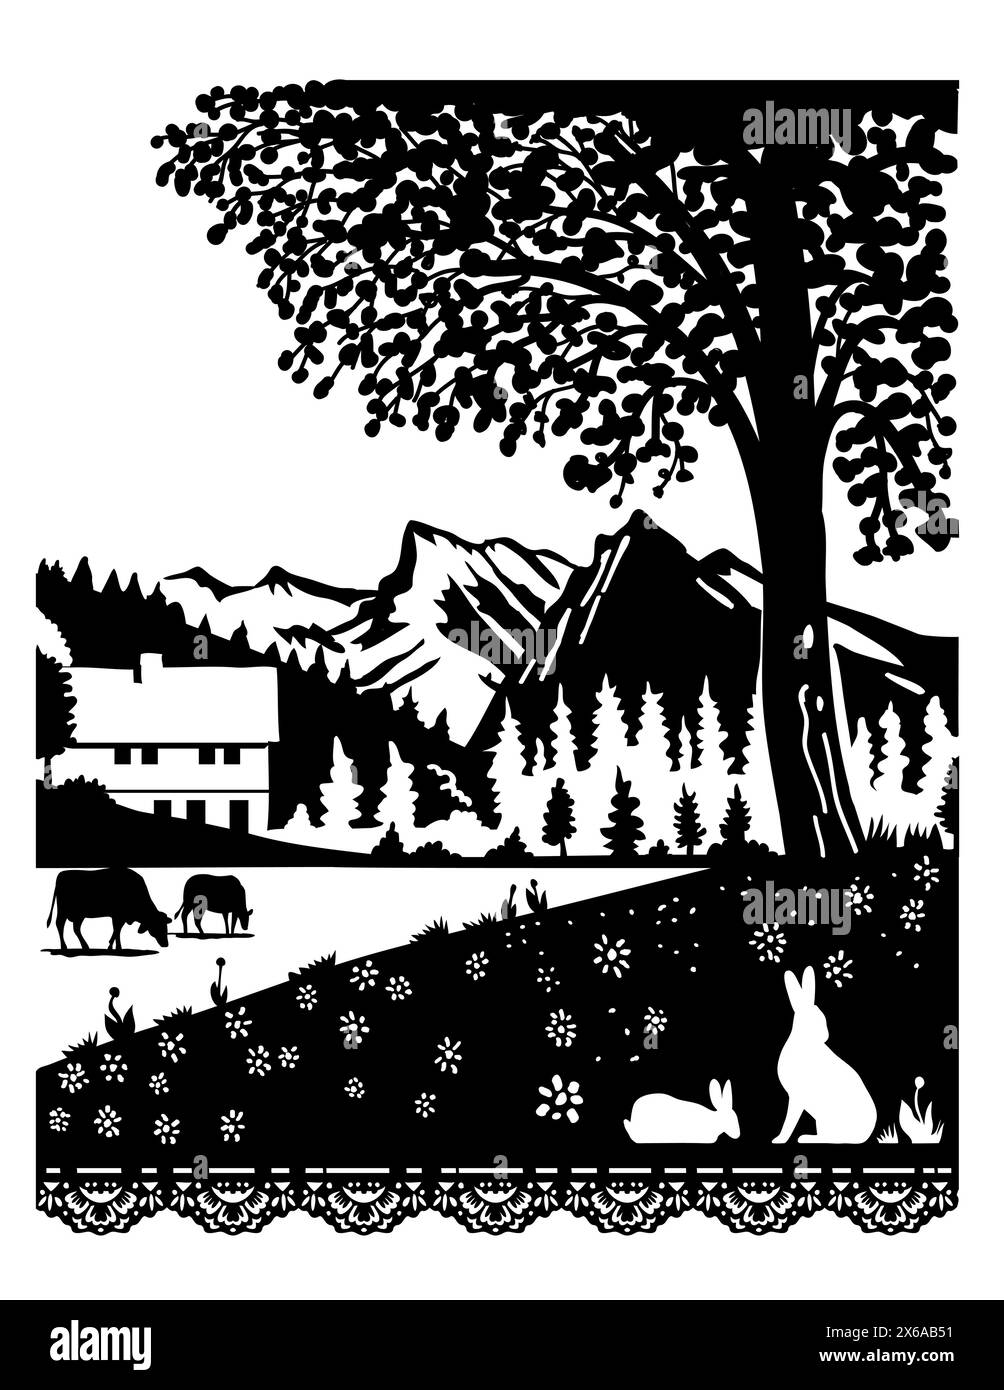 Scherenschnitte suisse ou ciseaux taillé illustration de la silhouette d'une vache et d'un lapin dans un village du Parc naturel de Diemtigtal à Berne, Suisse. Illustration de Vecteur